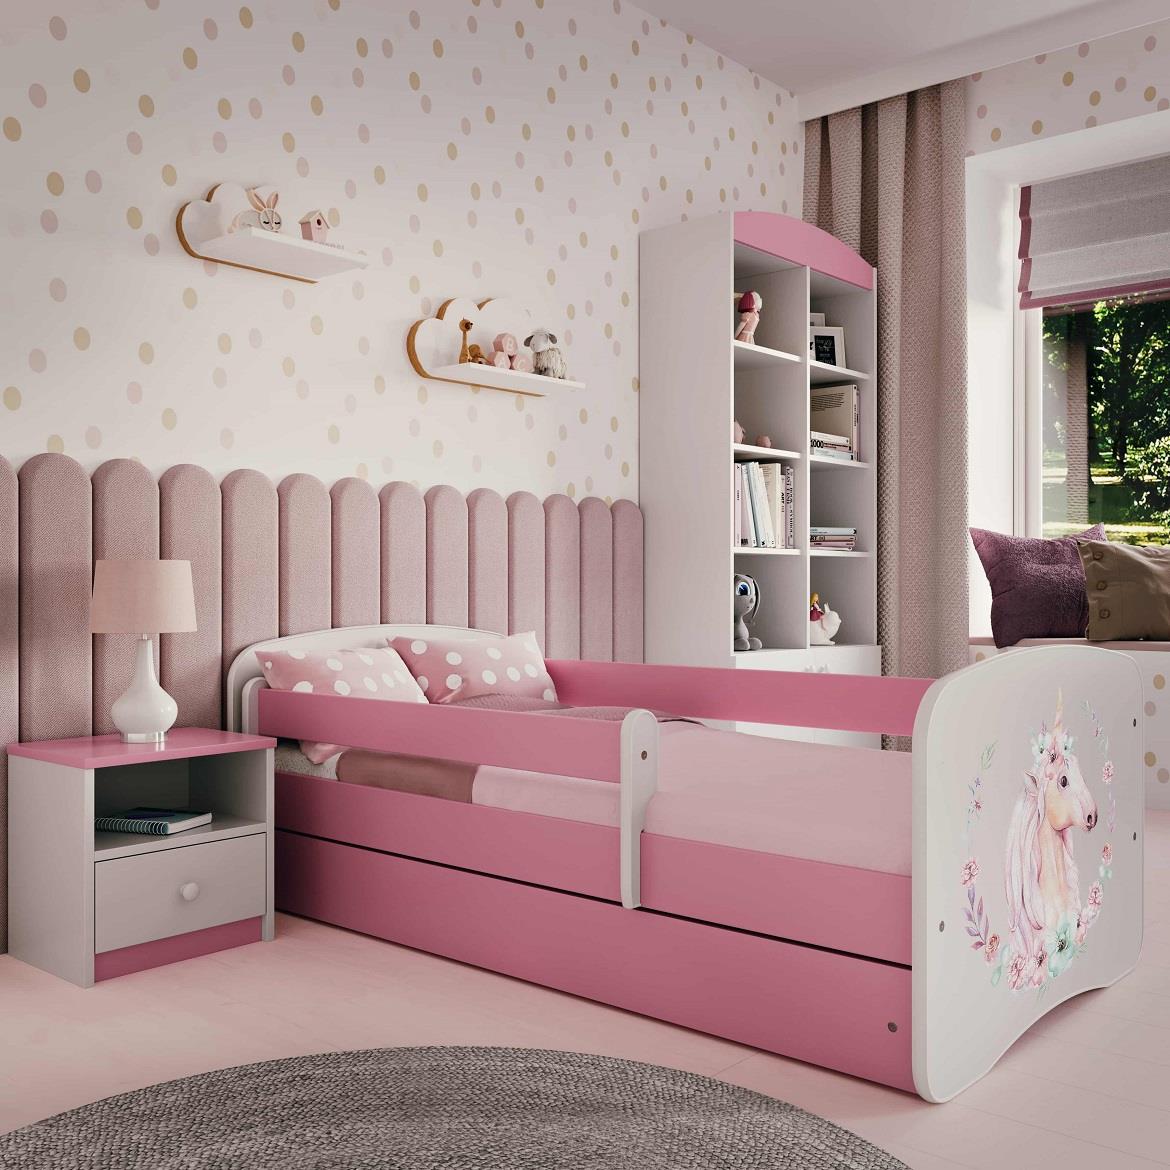 Babydreams krevet+podnica+dušek 90x184x61 cm beli/roze/print jednorog